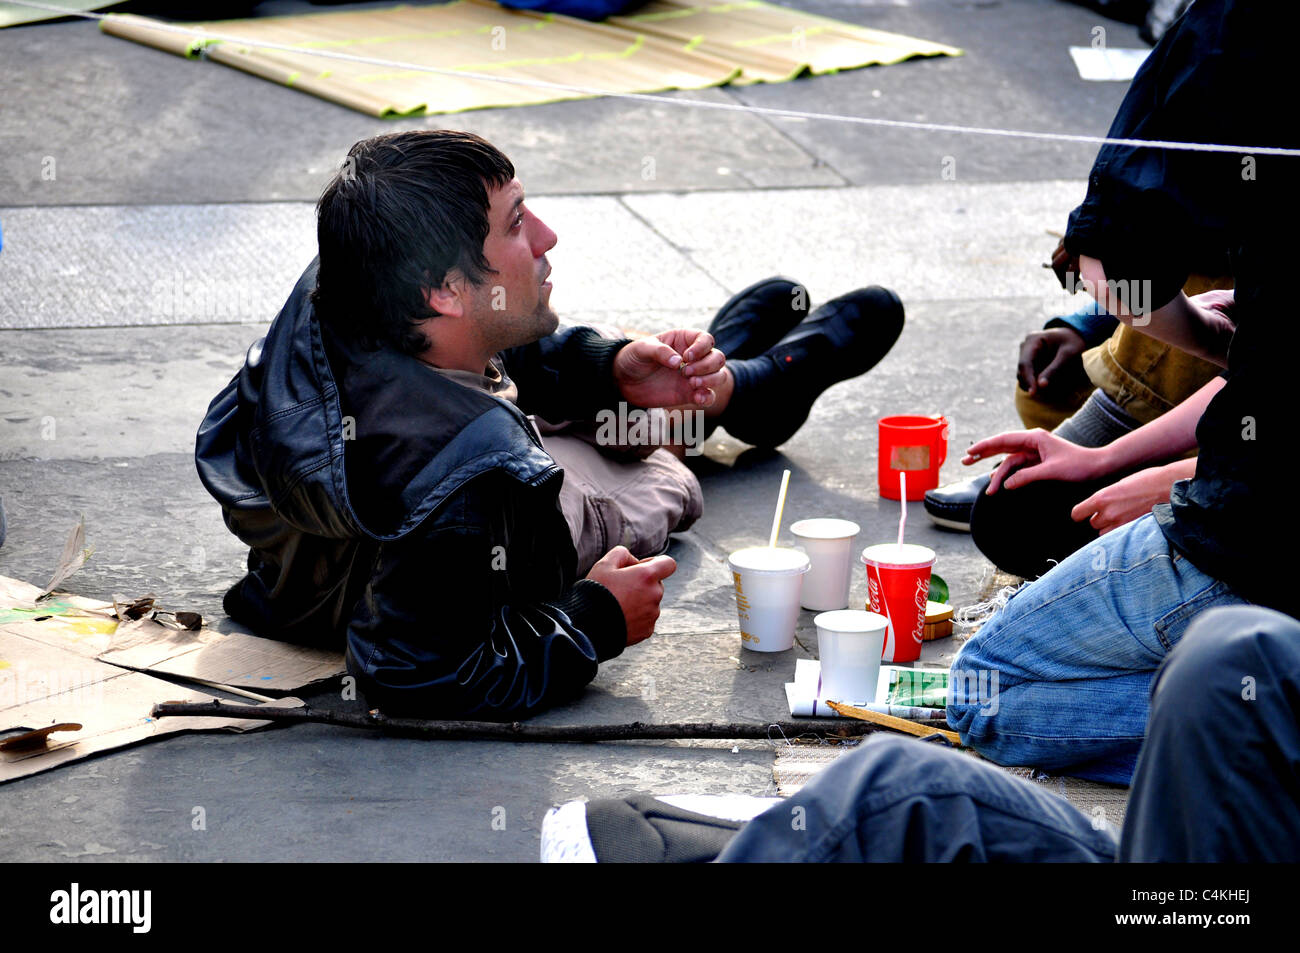 Fotos von 2011 1. kann Tag der internationalen Arbeiter-März, Rallye und späteren Beruf des Trafalgar Square. Stockfoto